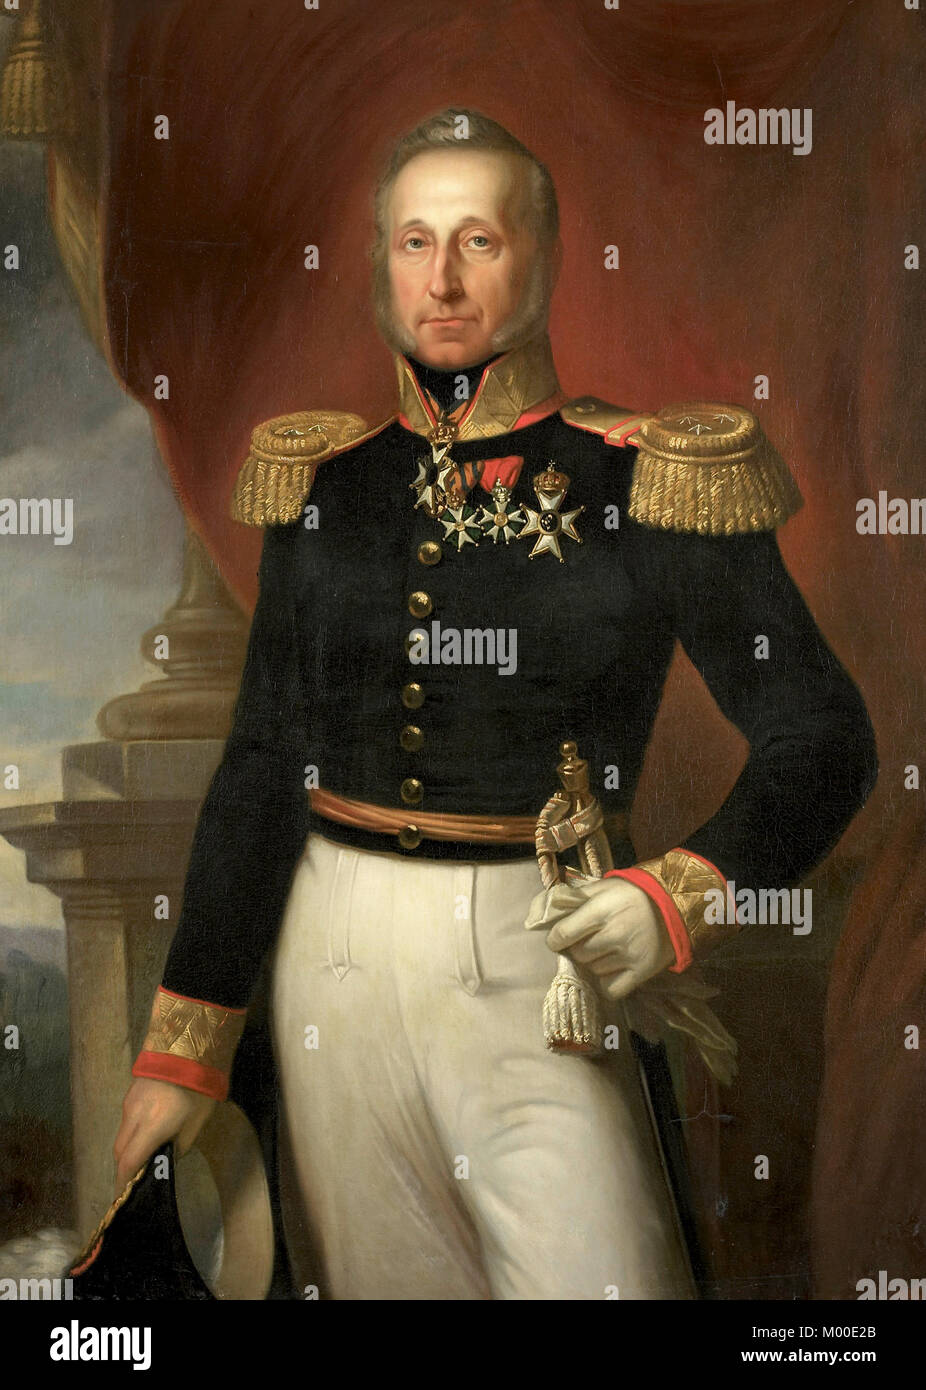 Dominique Jacques de Eerens (1781 - 1840) Le major général et homme politique néerlandais Banque D'Images